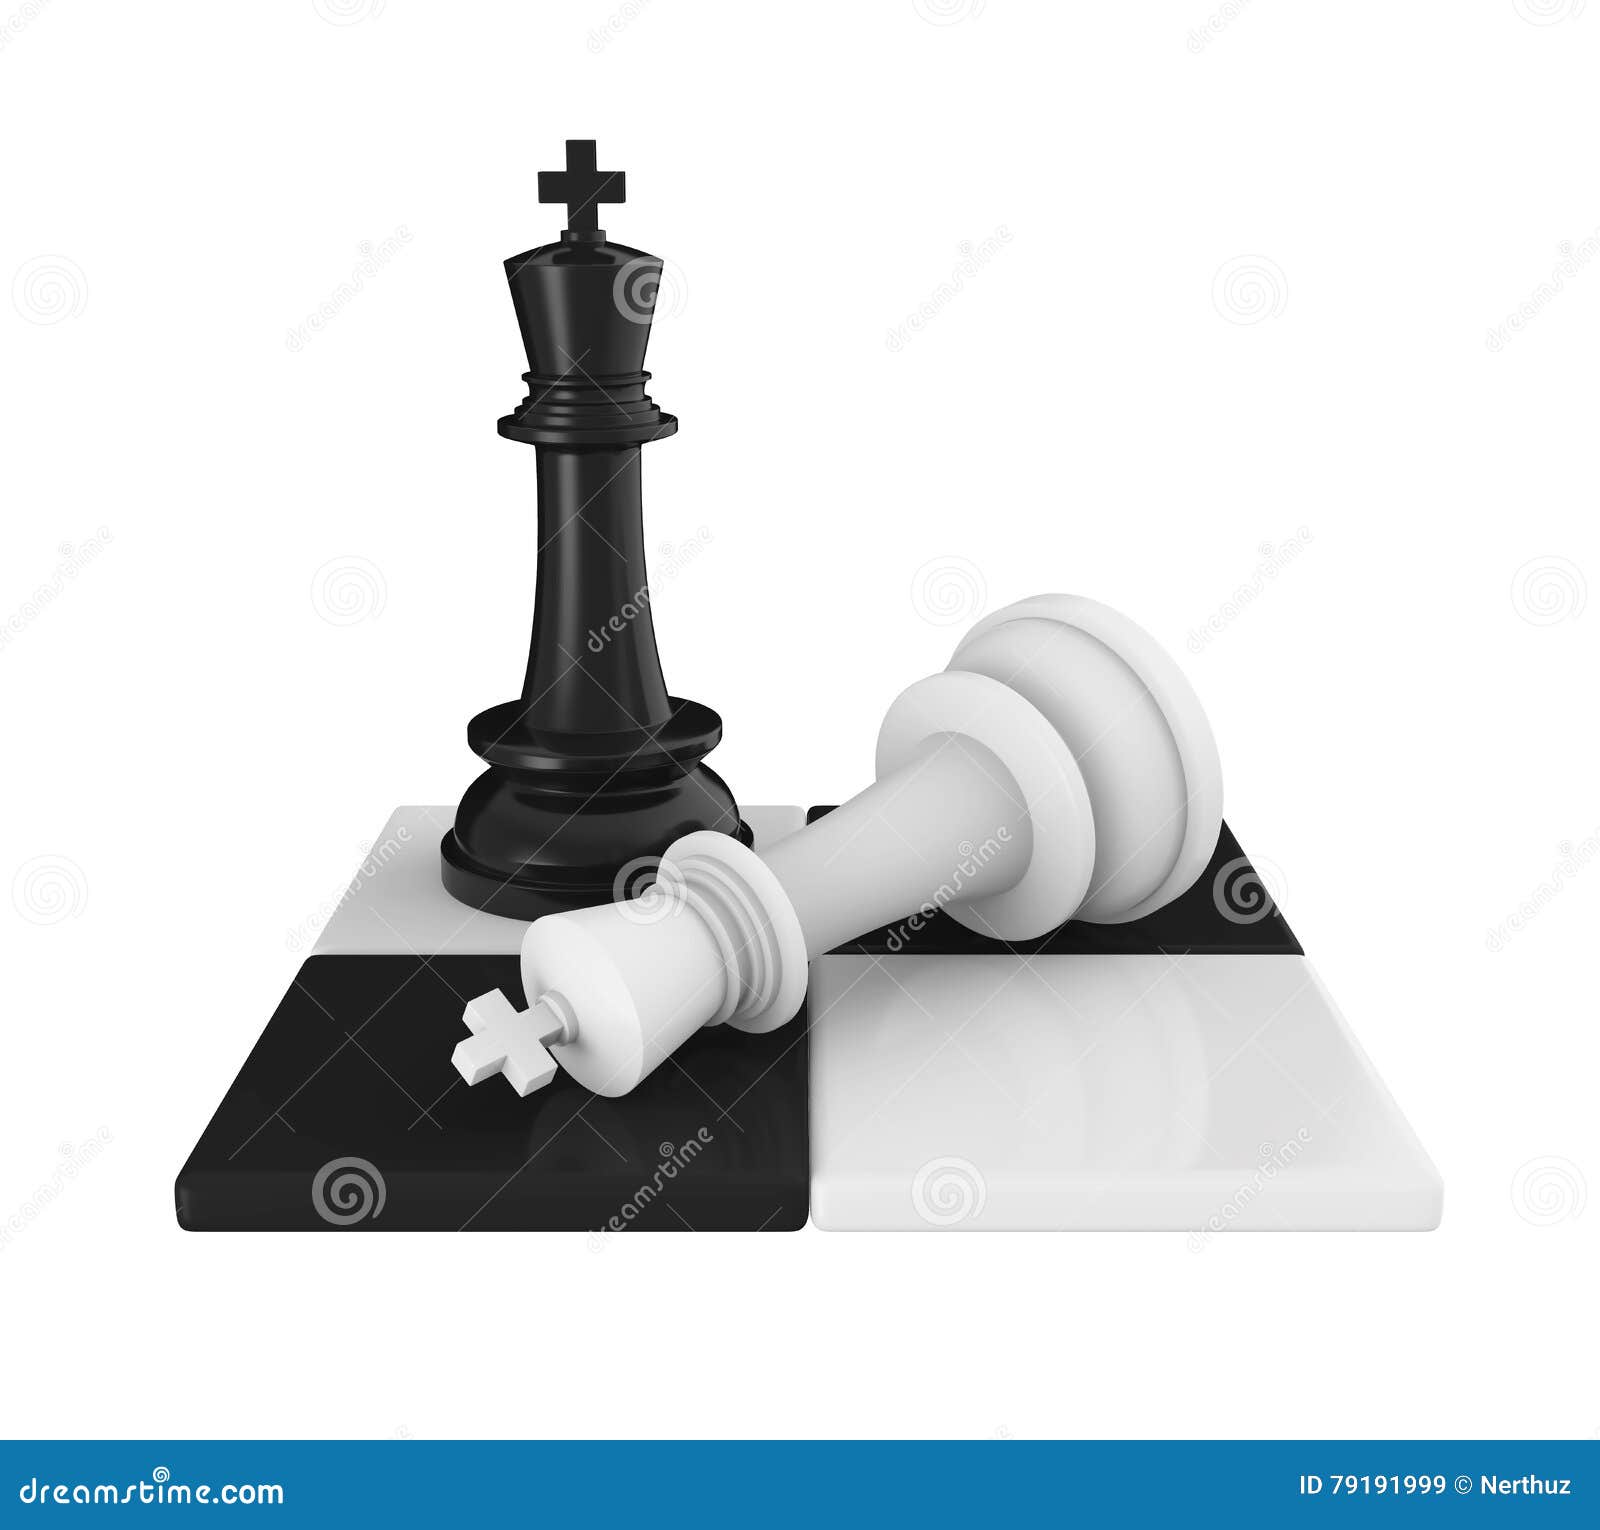 Wallpaper white, black, chess, king for mobile and desktop